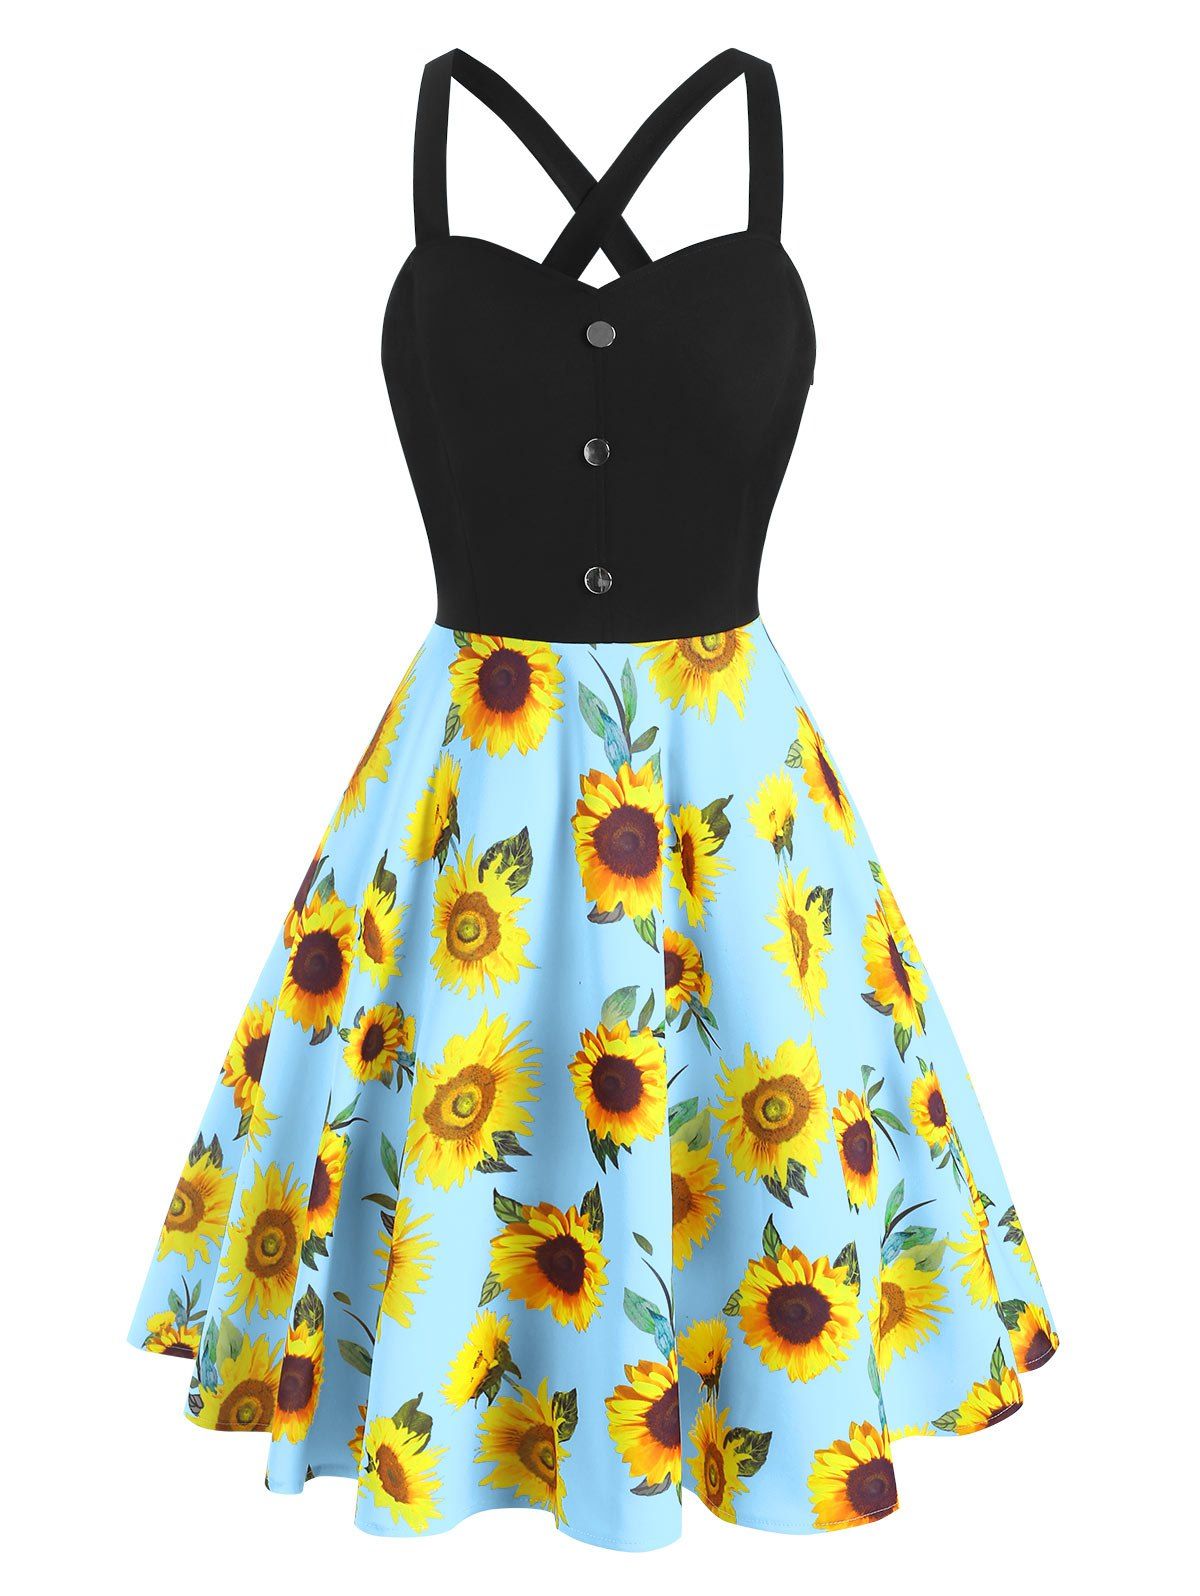 Sunflower Print Criss Cross Mock Button Dress - LIGHT BLUE M